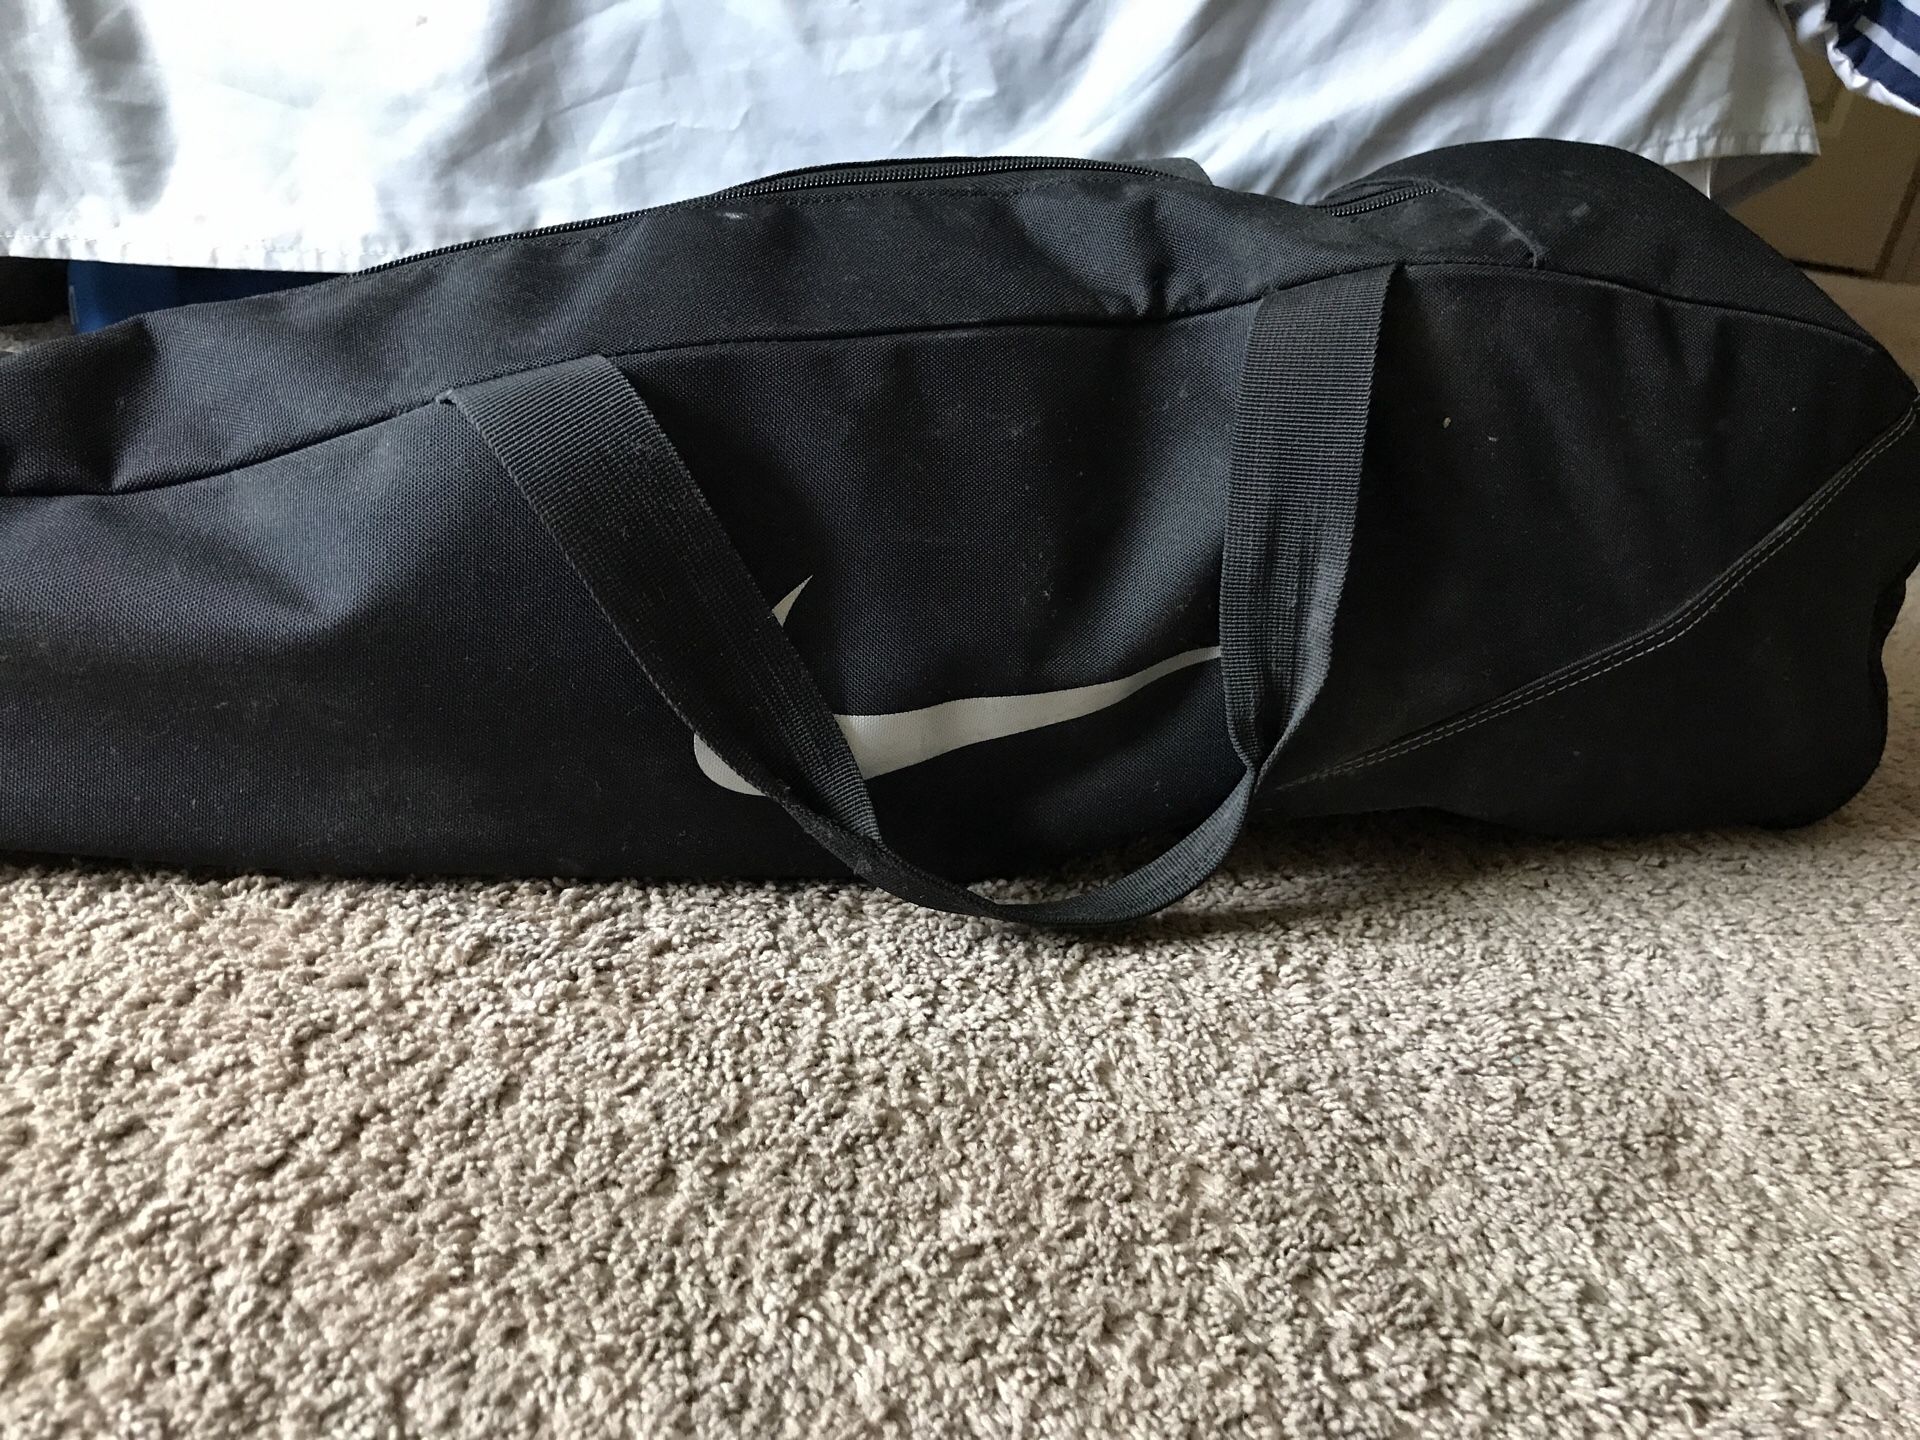 Nike Bag, and Baseball equipment